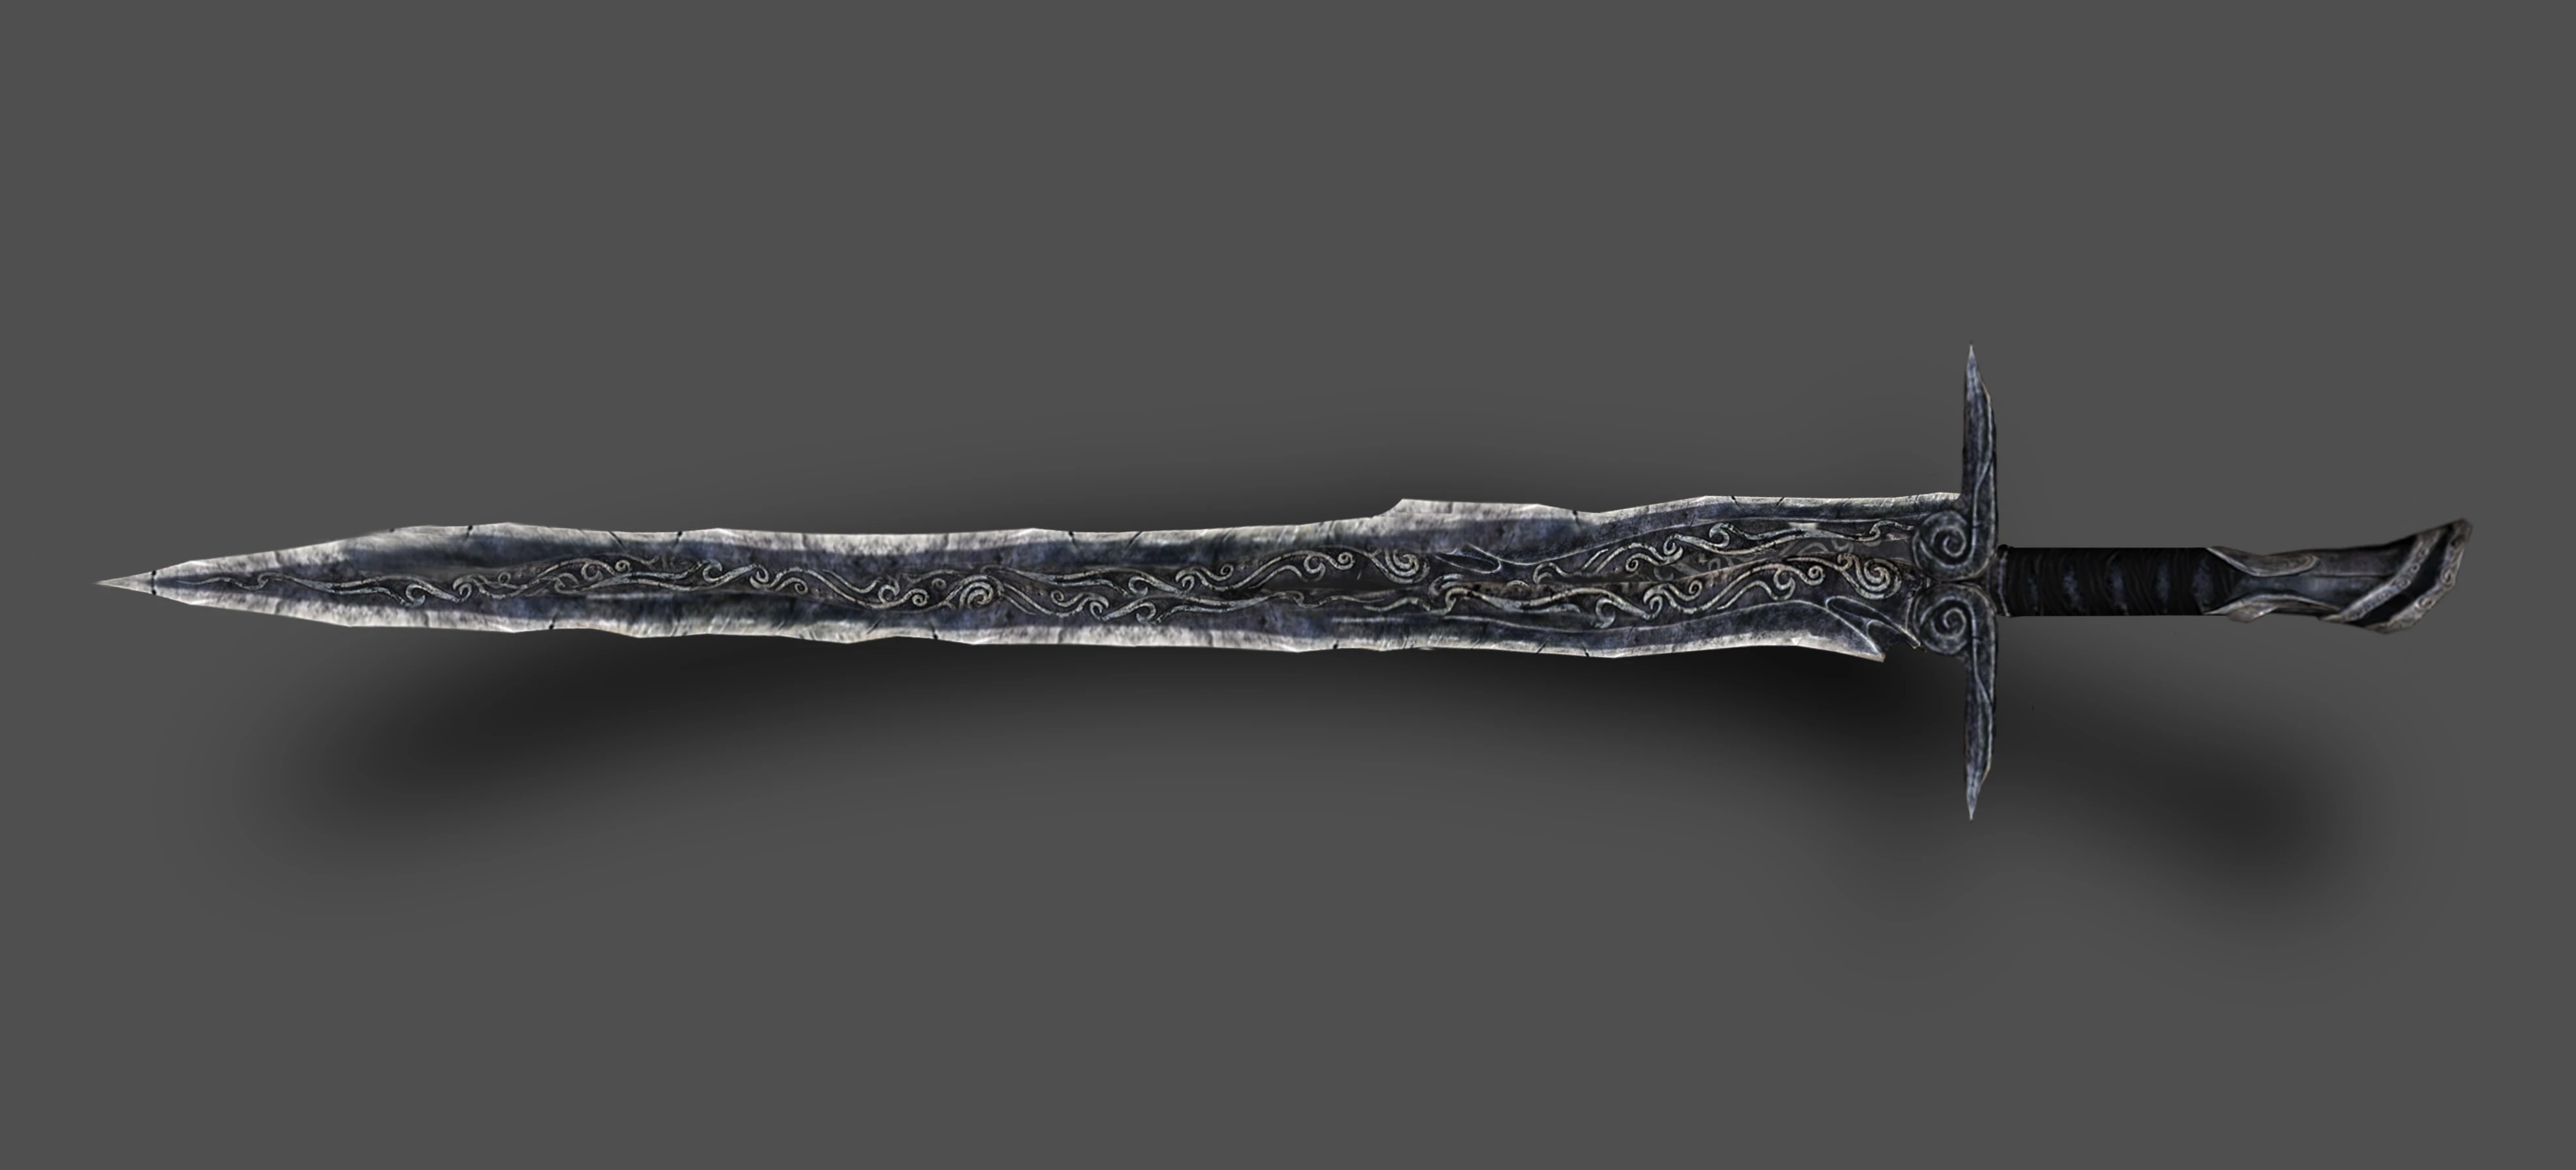 Эбонитовый двуручный меч Skyrim